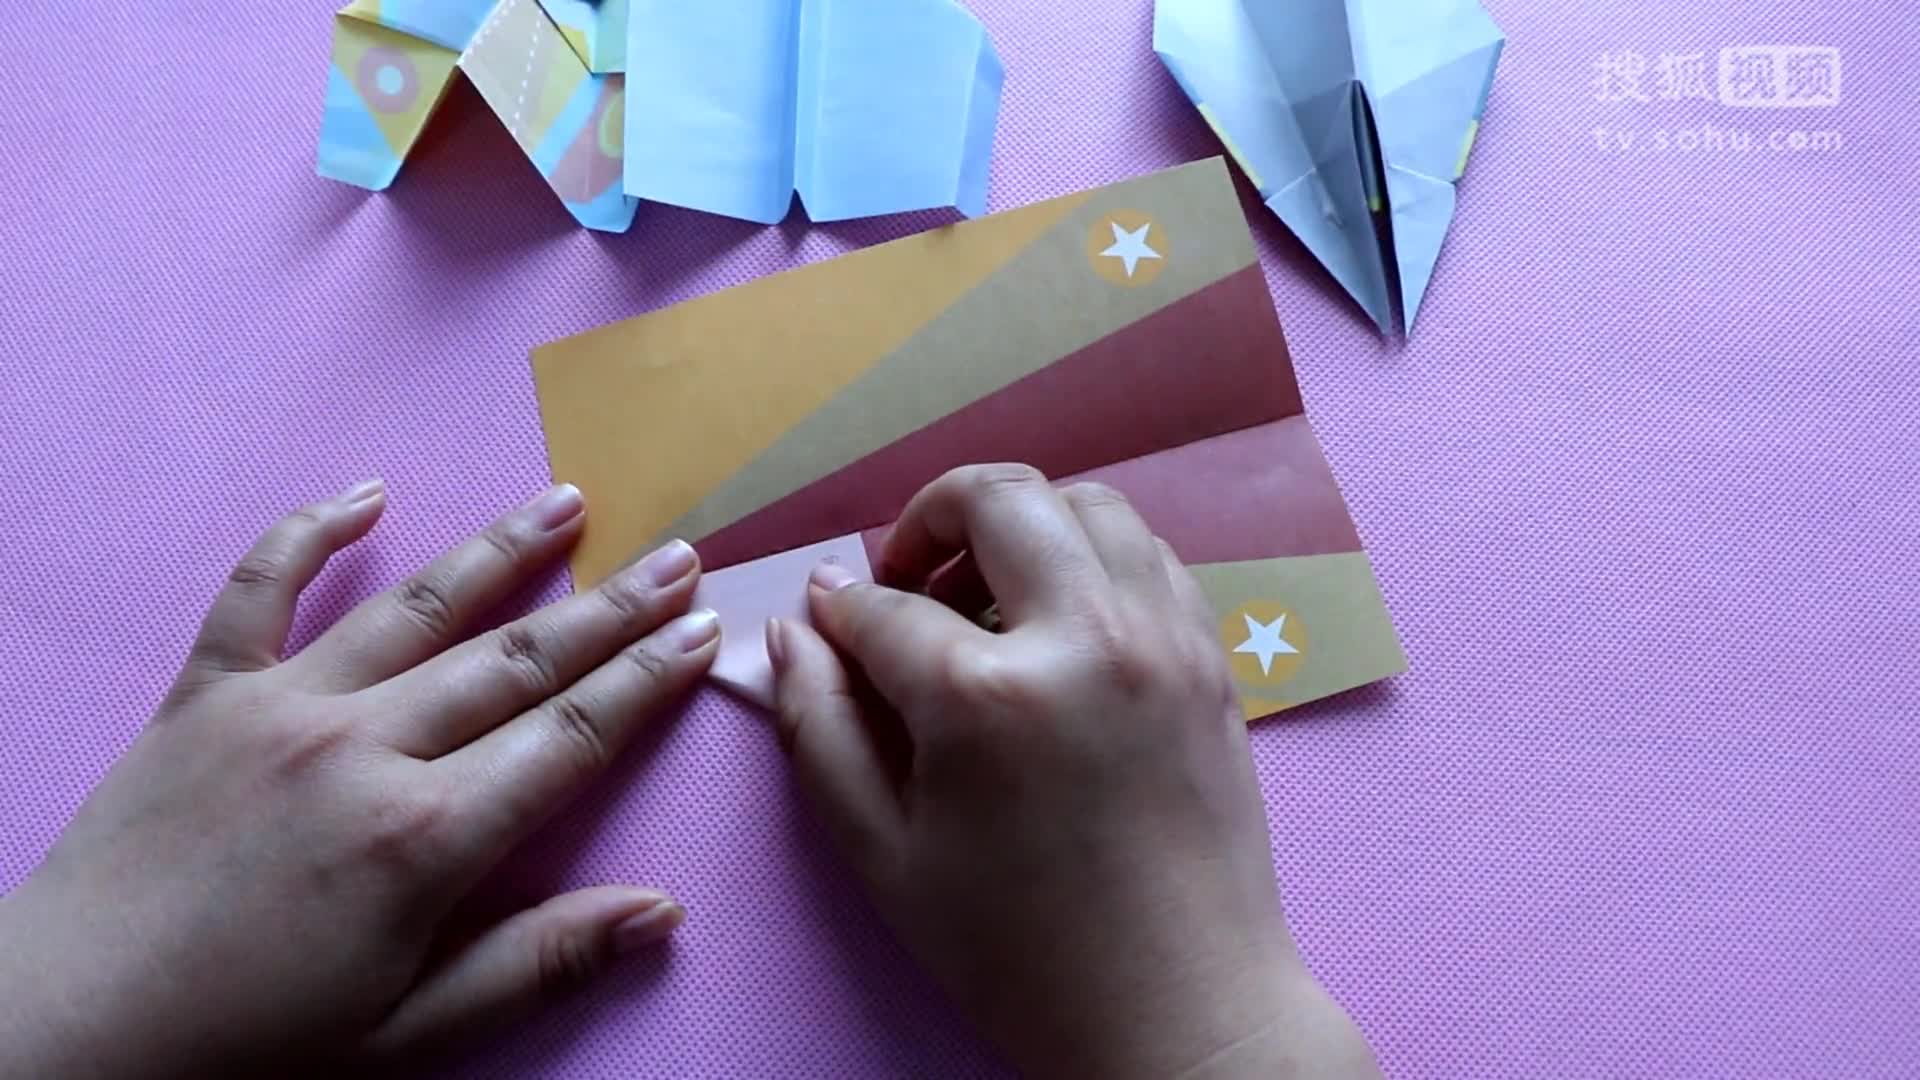 播放纸飞机的视频怎么做_播放纸飞机的视频怎么做出来的